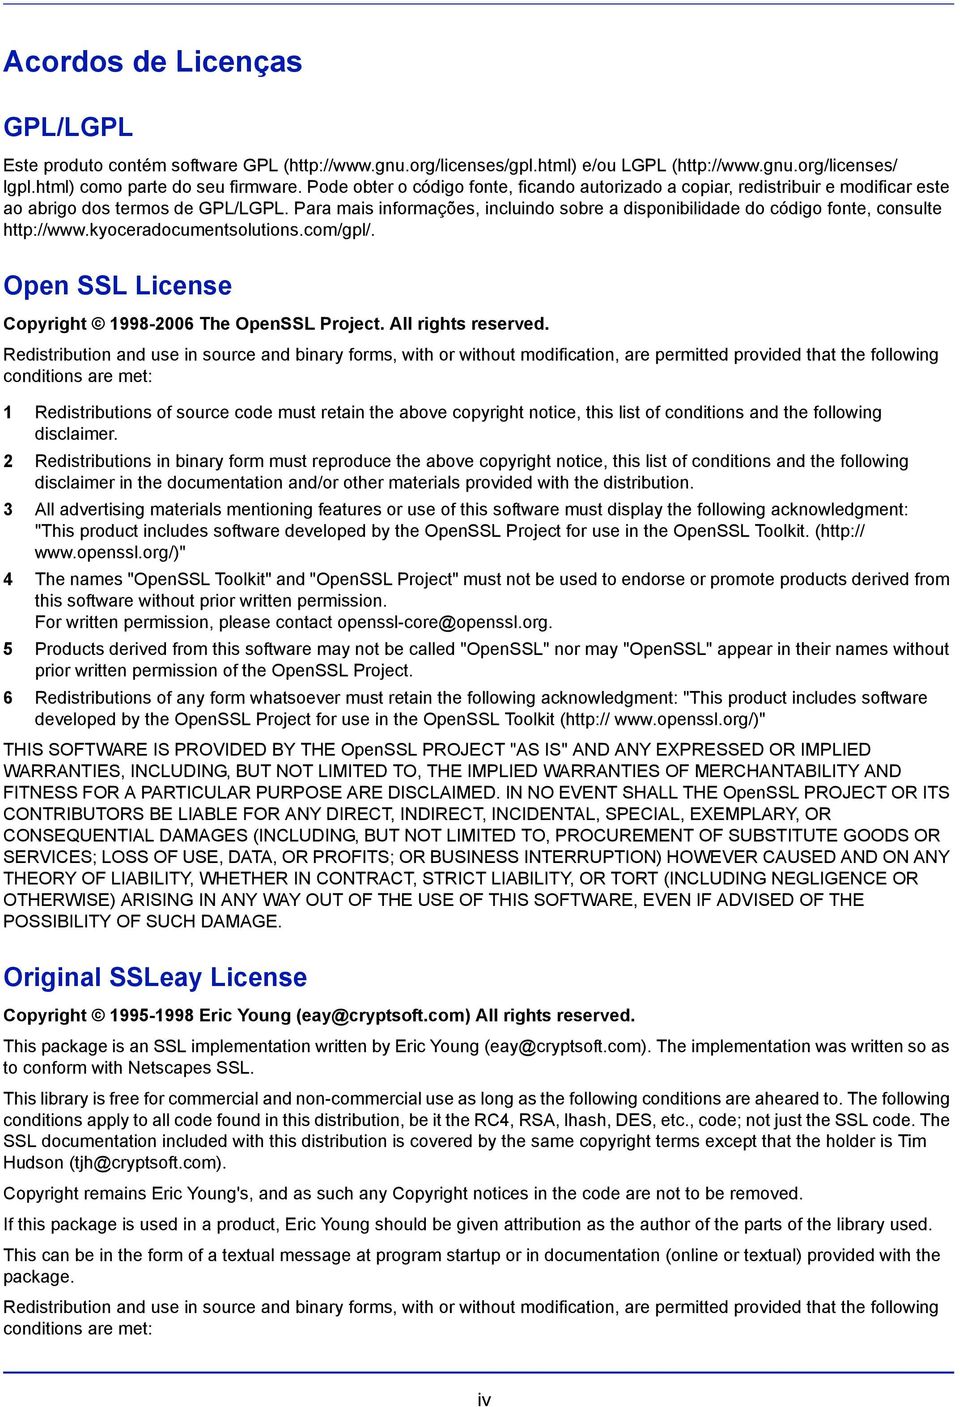 Para mais informações, incluindo sobre a disponibilidade do código fonte, consulte http://www.kyoceradocumentsolutions.com/gpl/. Open SSL License Copyright 1998-2006 The OpenSSL Project.